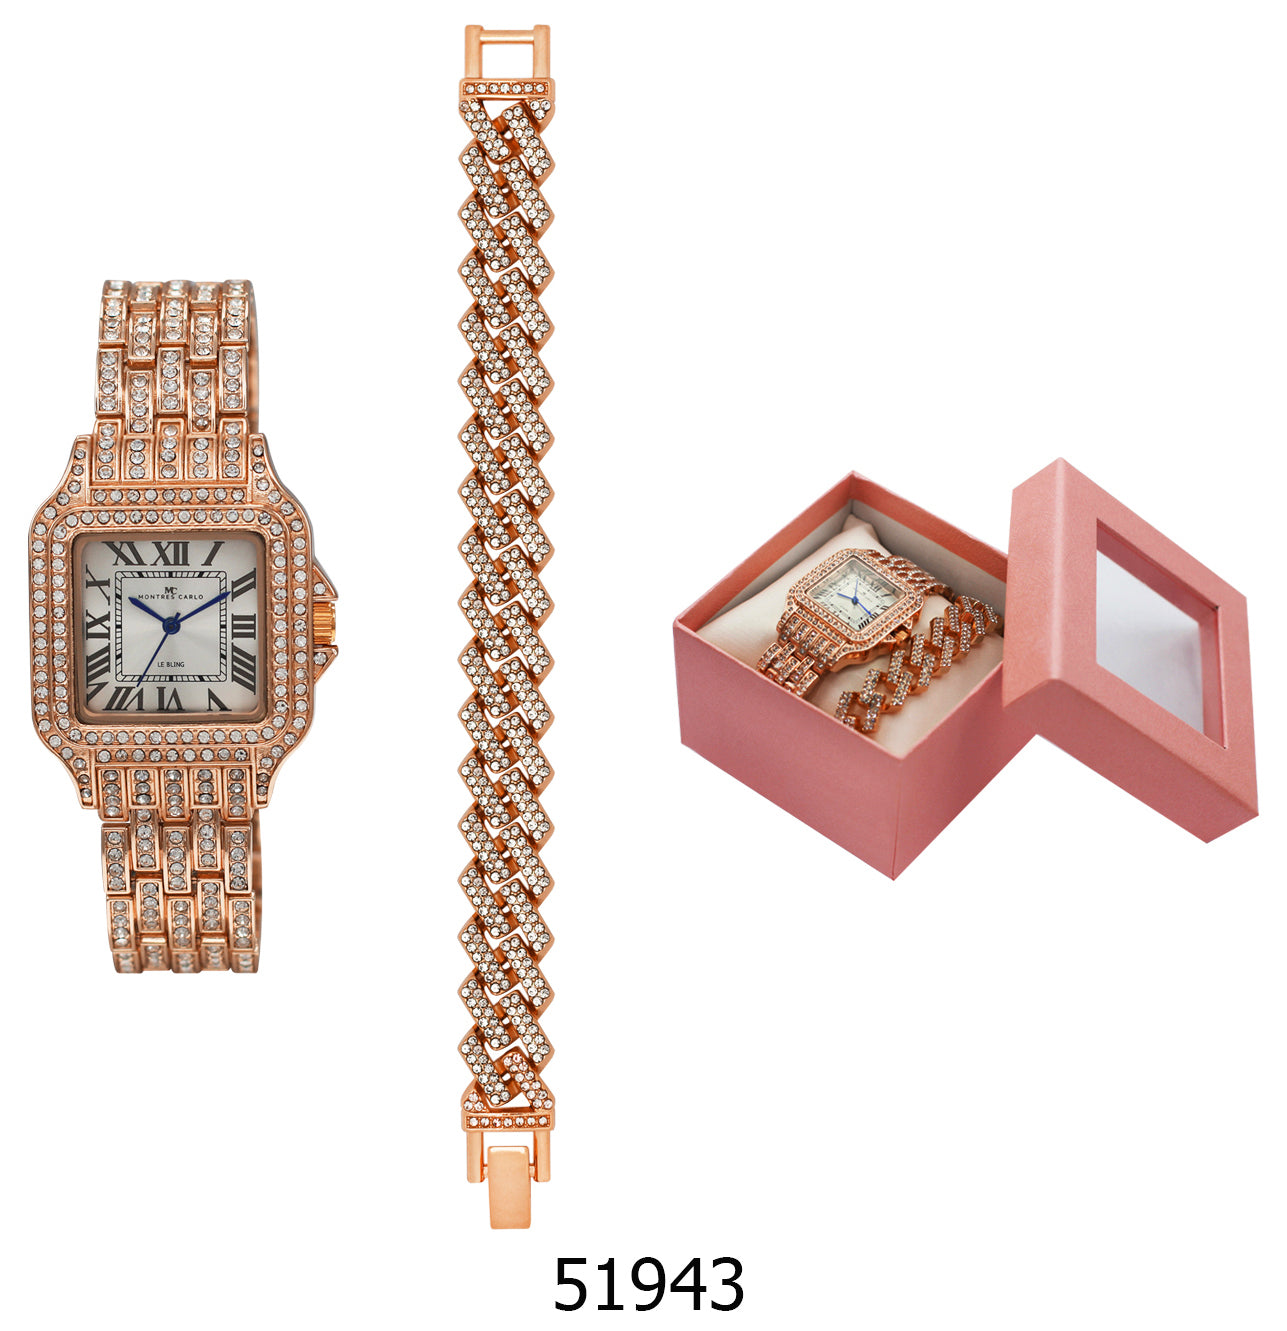 5194 - Reloj con correa de metal de hielo en caja con cadena